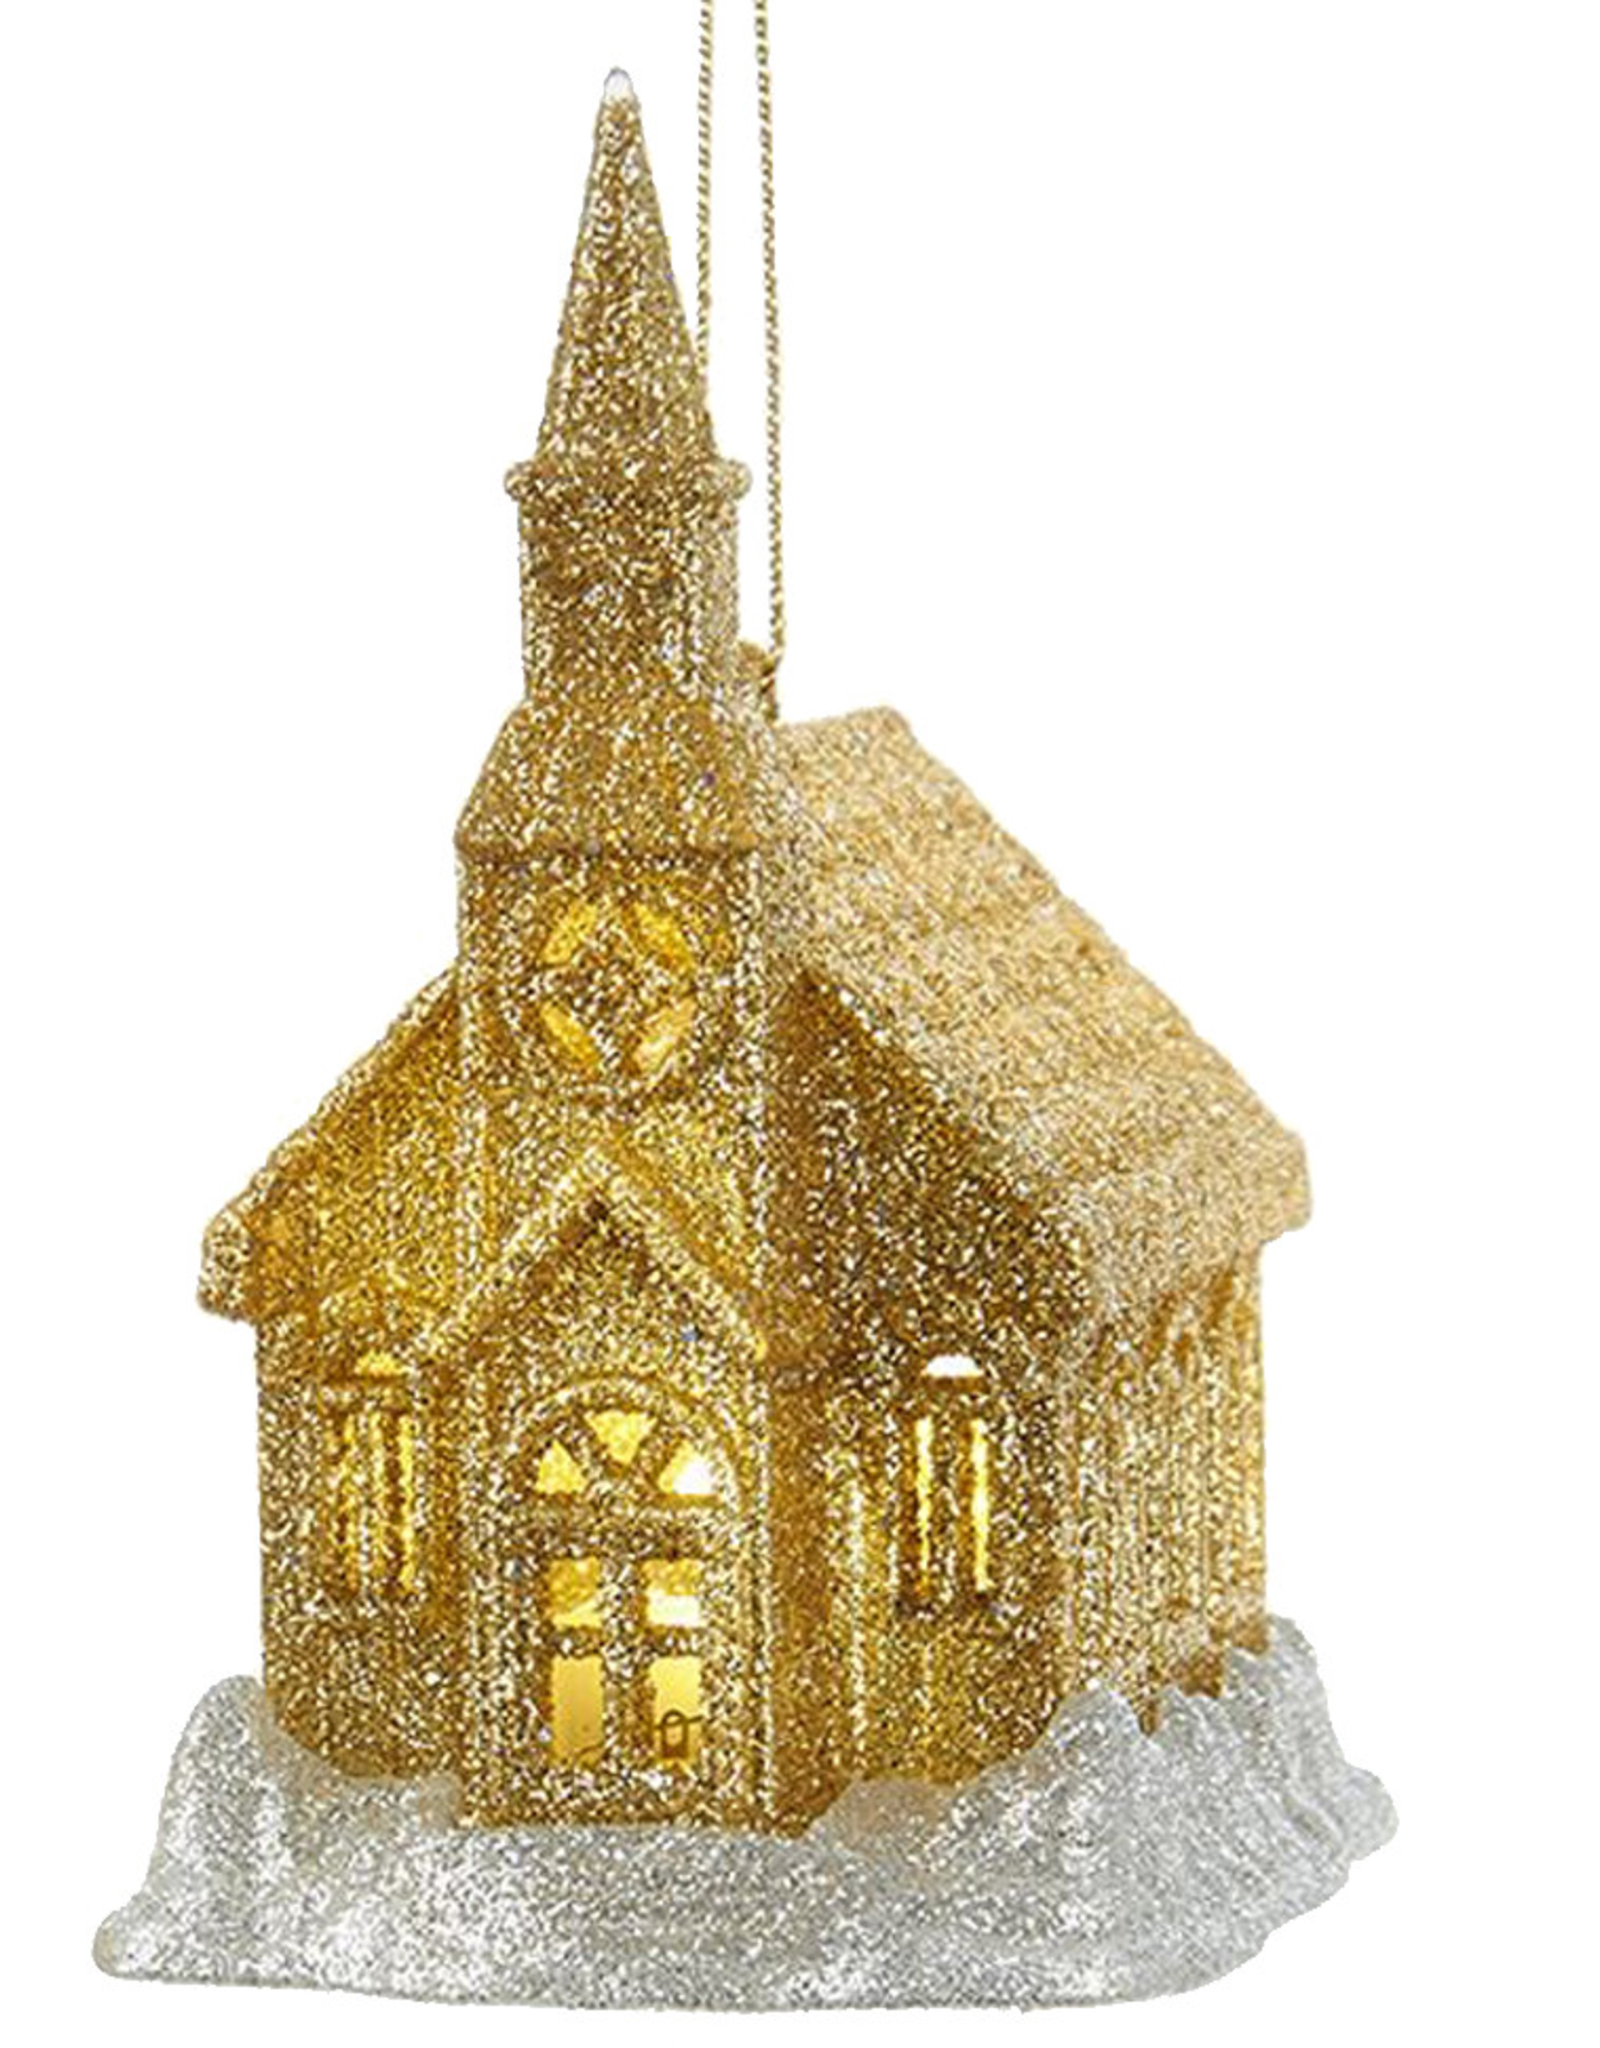 Kurt Adler Gold Glittered LED Light Up Church Ornament 4 inch -B